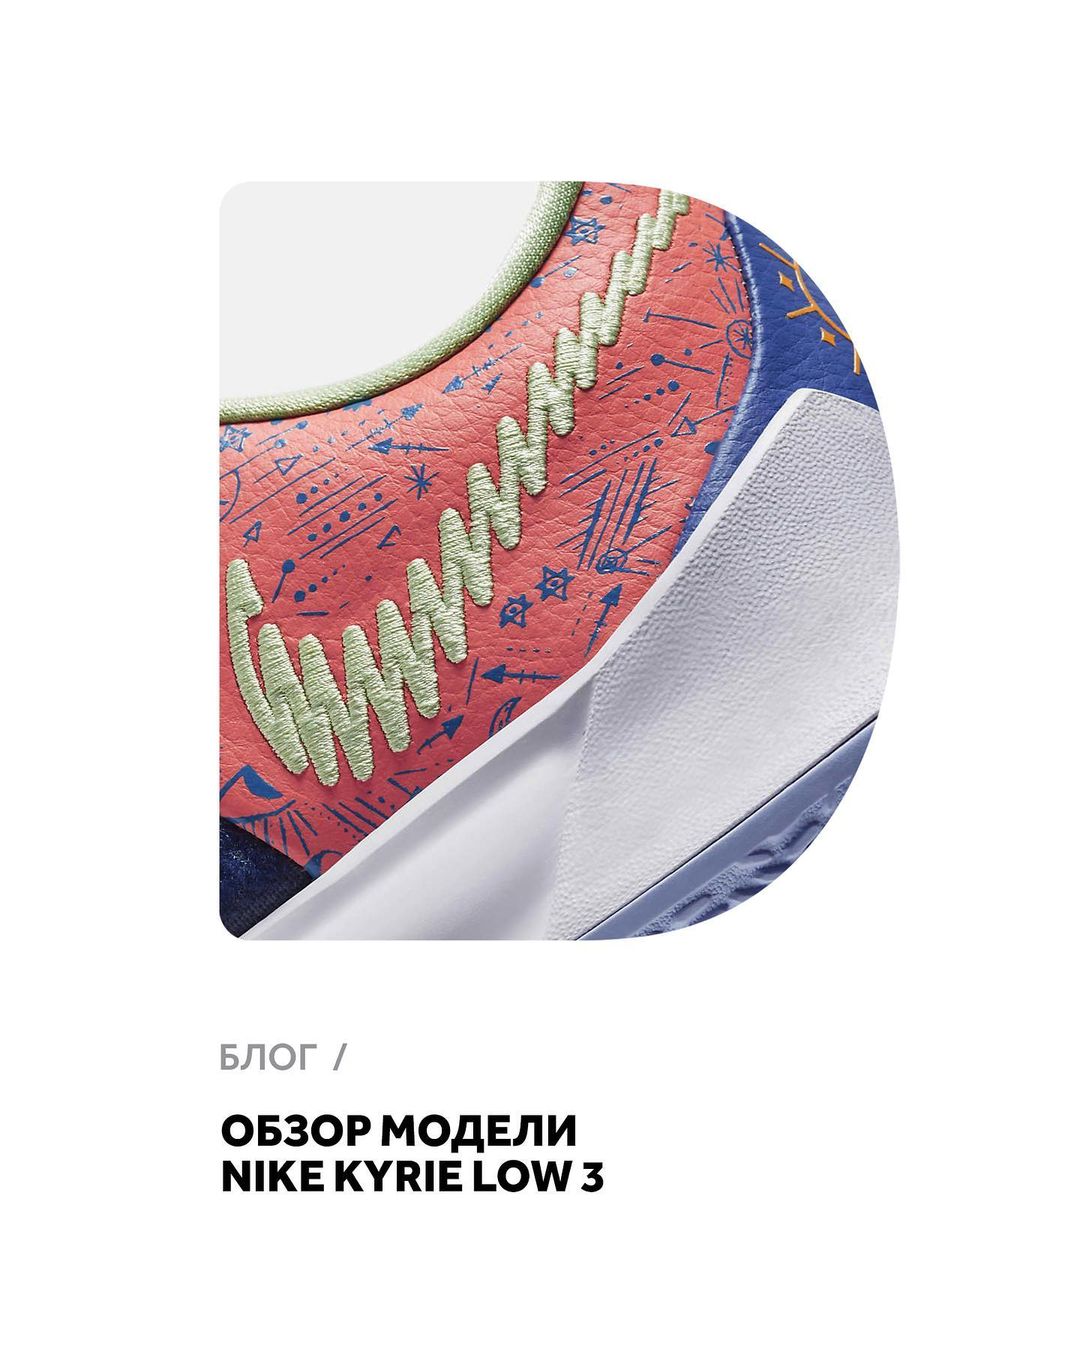 𝐅𝐔𝐍𝐊𝐘 𝐃𝐔𝐍𝐊𝐘 - 🏀Обзор модели Nike Kyrie Low 3. Читайте новую статью в нашем блоге. Ссылка в Stories.
⠀
Кроссовки уже доступны в Funky Dunky.
⠀
#funkydunky #kyrie3low